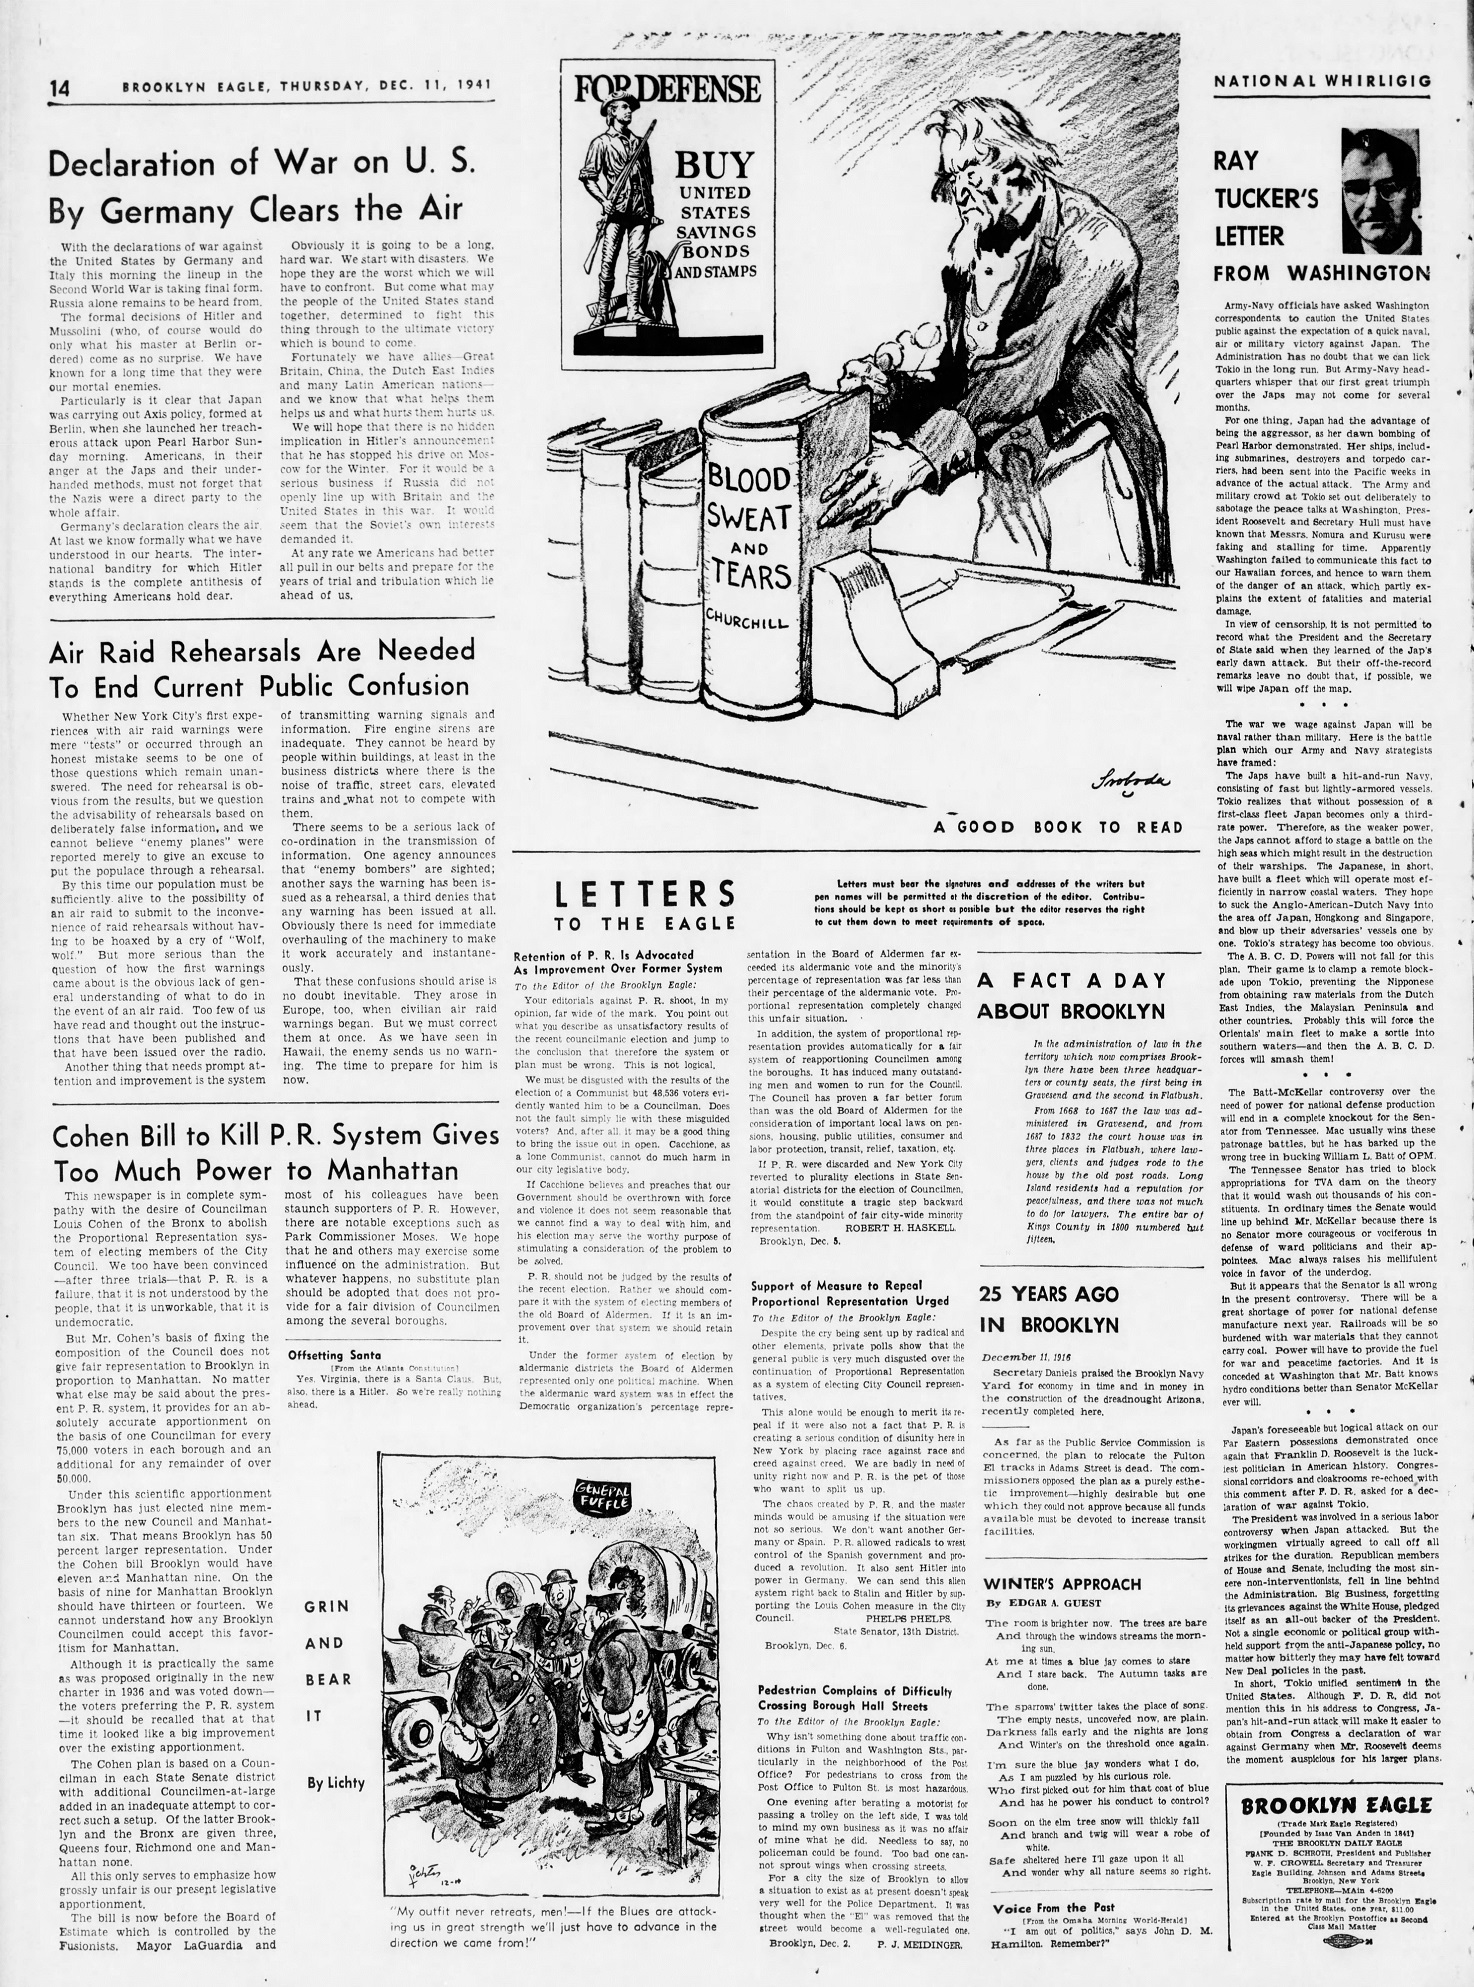 The_Brooklyn_Daily_Eagle_Thu__Dec_11__1941_(5).jpg